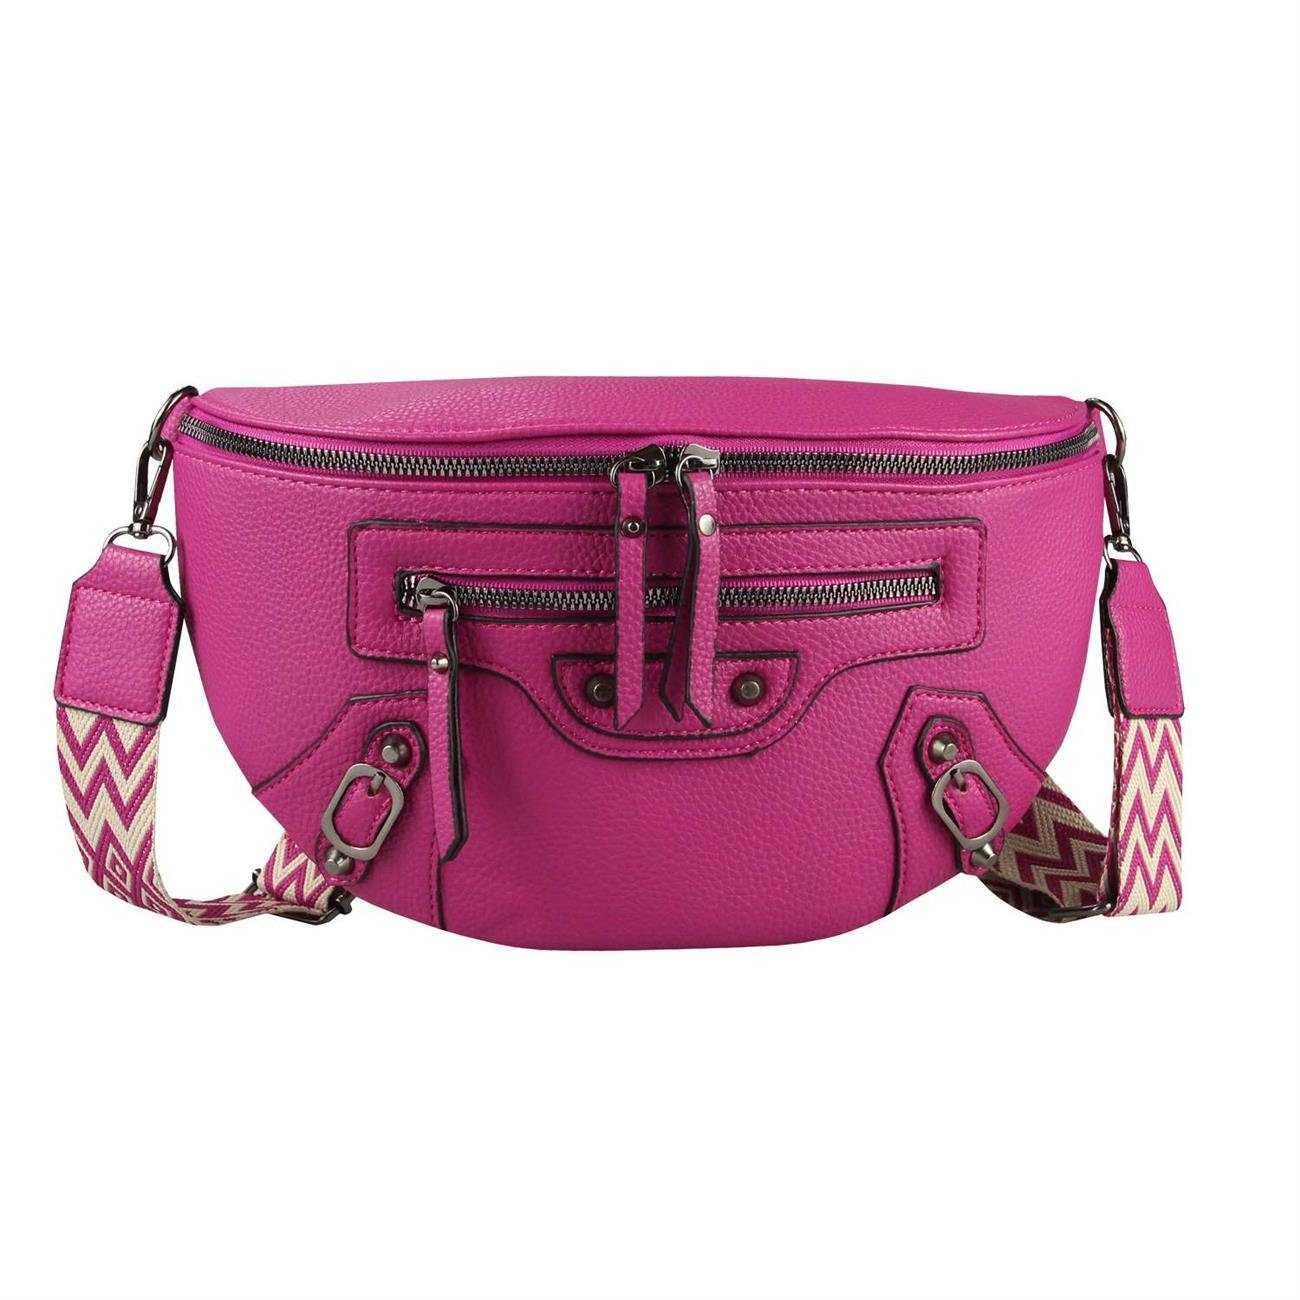 ITALYSHOP24 Bauchtasche Damen Gürteltasche Umhängetasche Bodybag Schultertasche CrossOver, Hüfttasche, Brusttasche, Crossbody, Muster Taschengurt, leicht Gewicht Pink